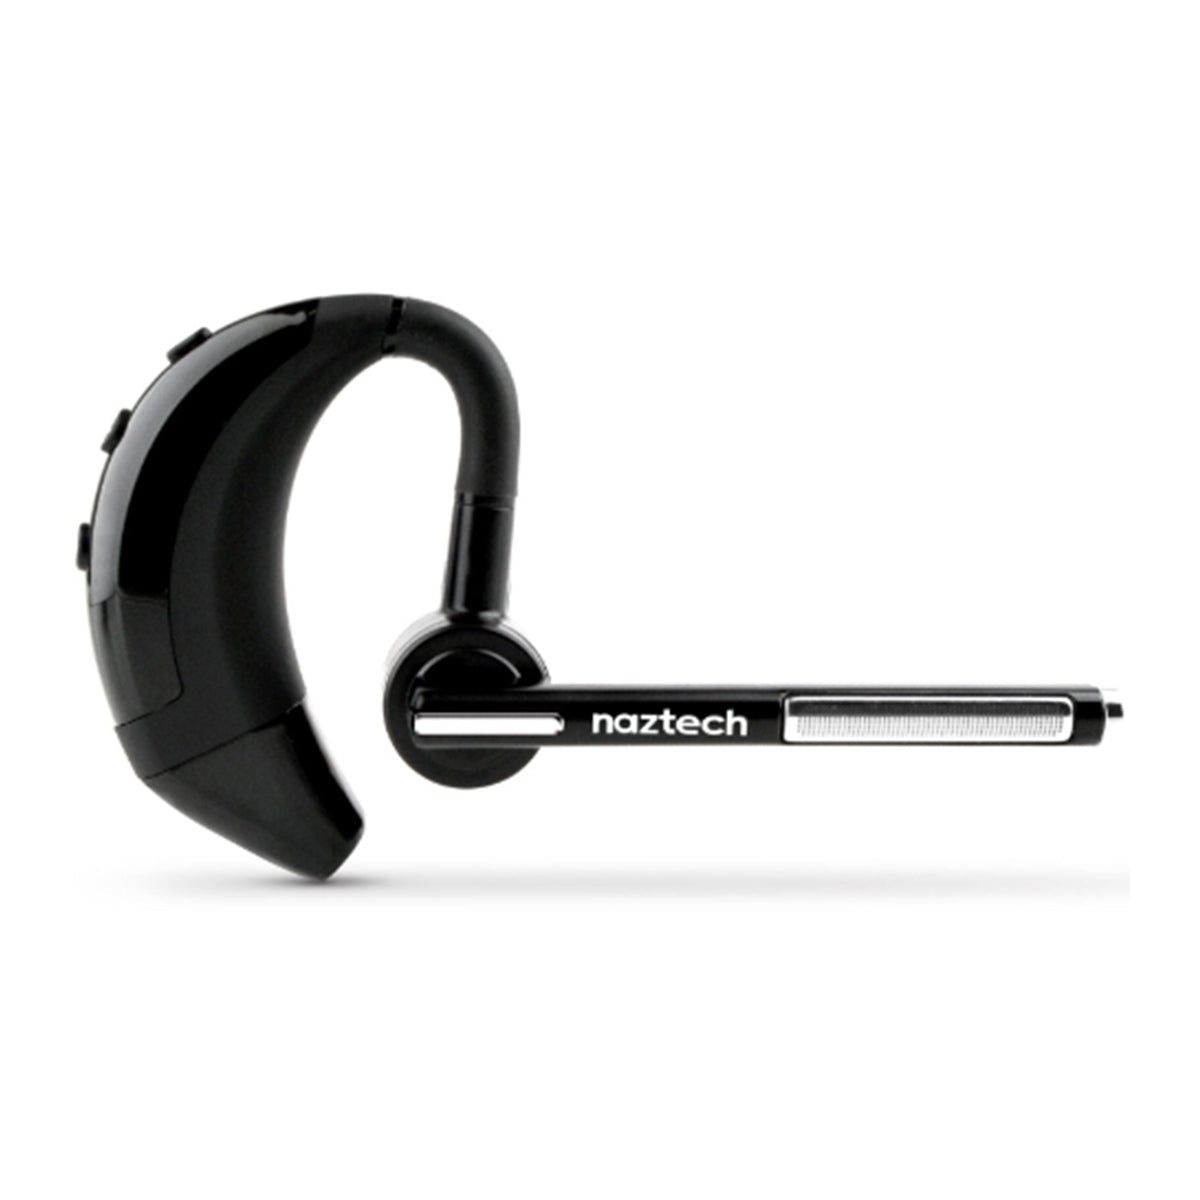 Naztech auriculares inalámbricos Bluetooth N750 - Naztech Wireless Bluetooth Headphones N750